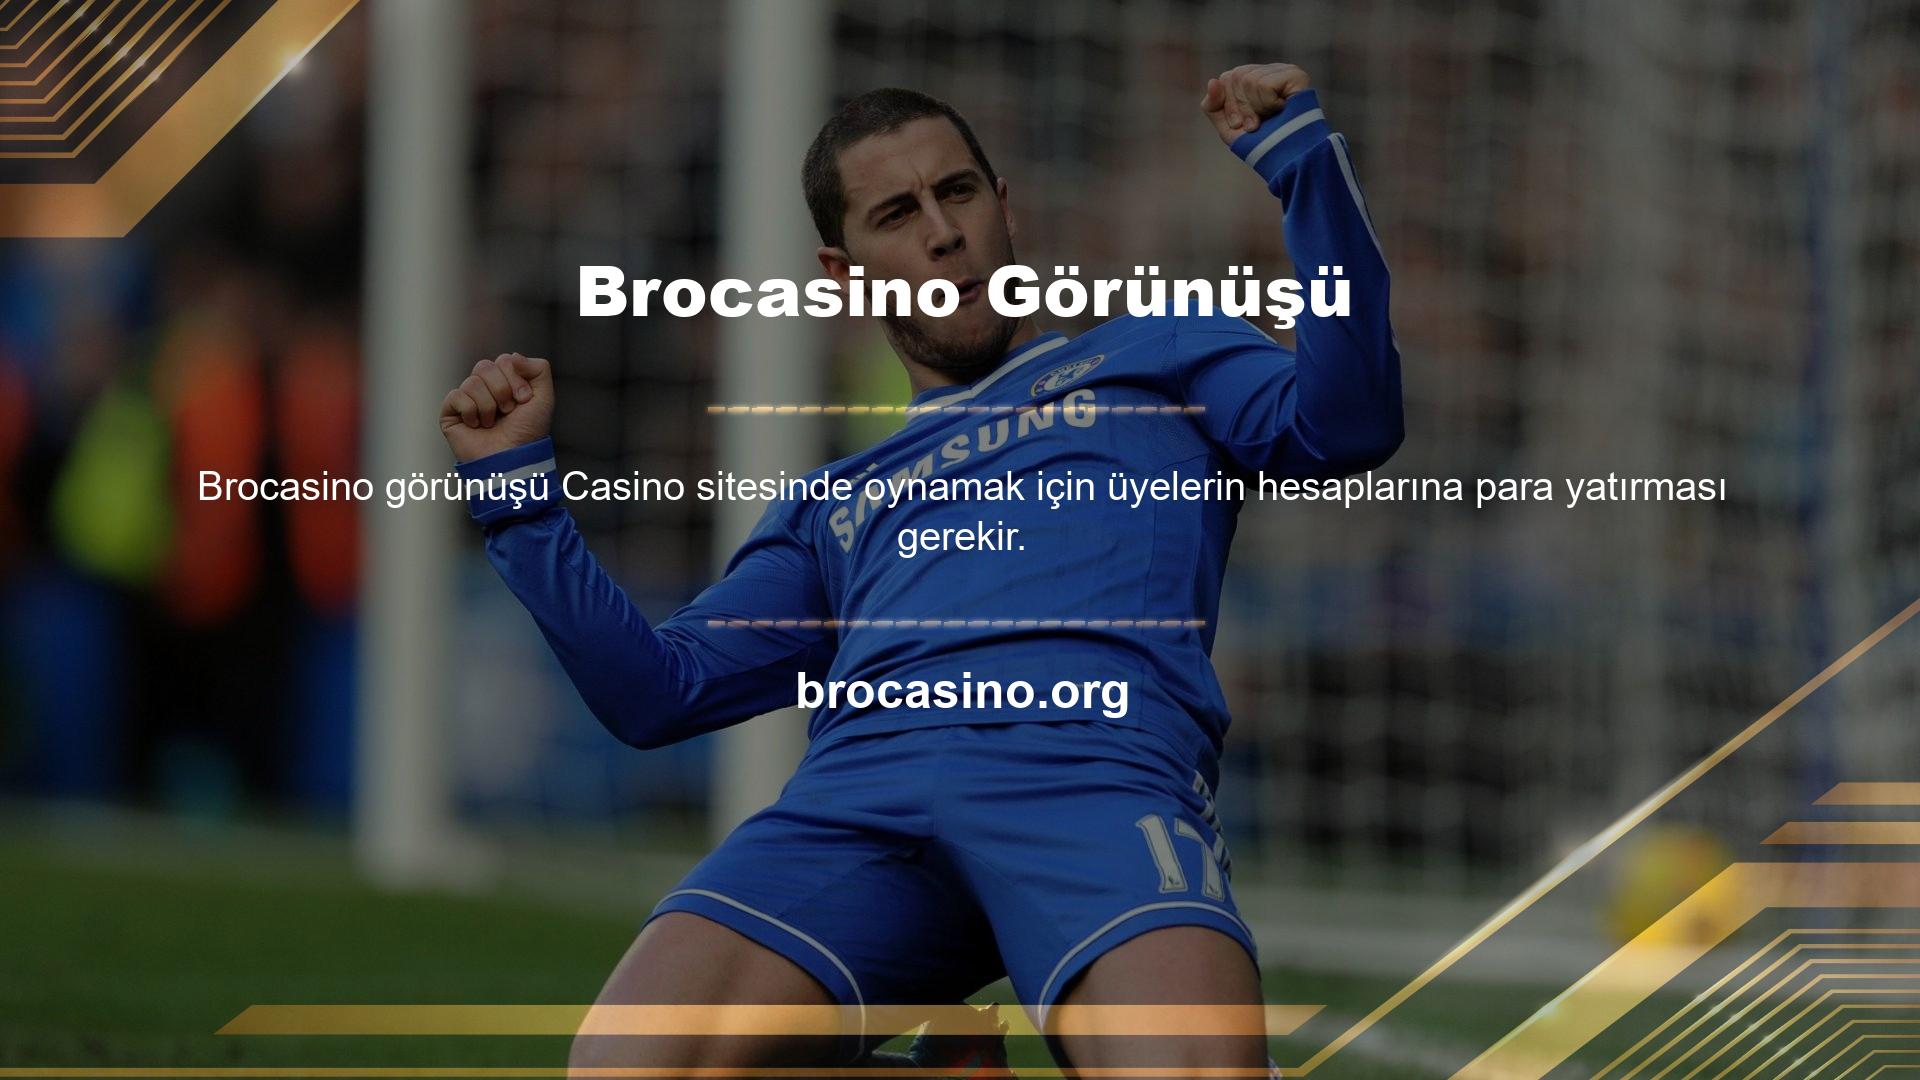 Brocasino, para yatırmak için kredi kartı kullanan bahis sitelerinden biridir